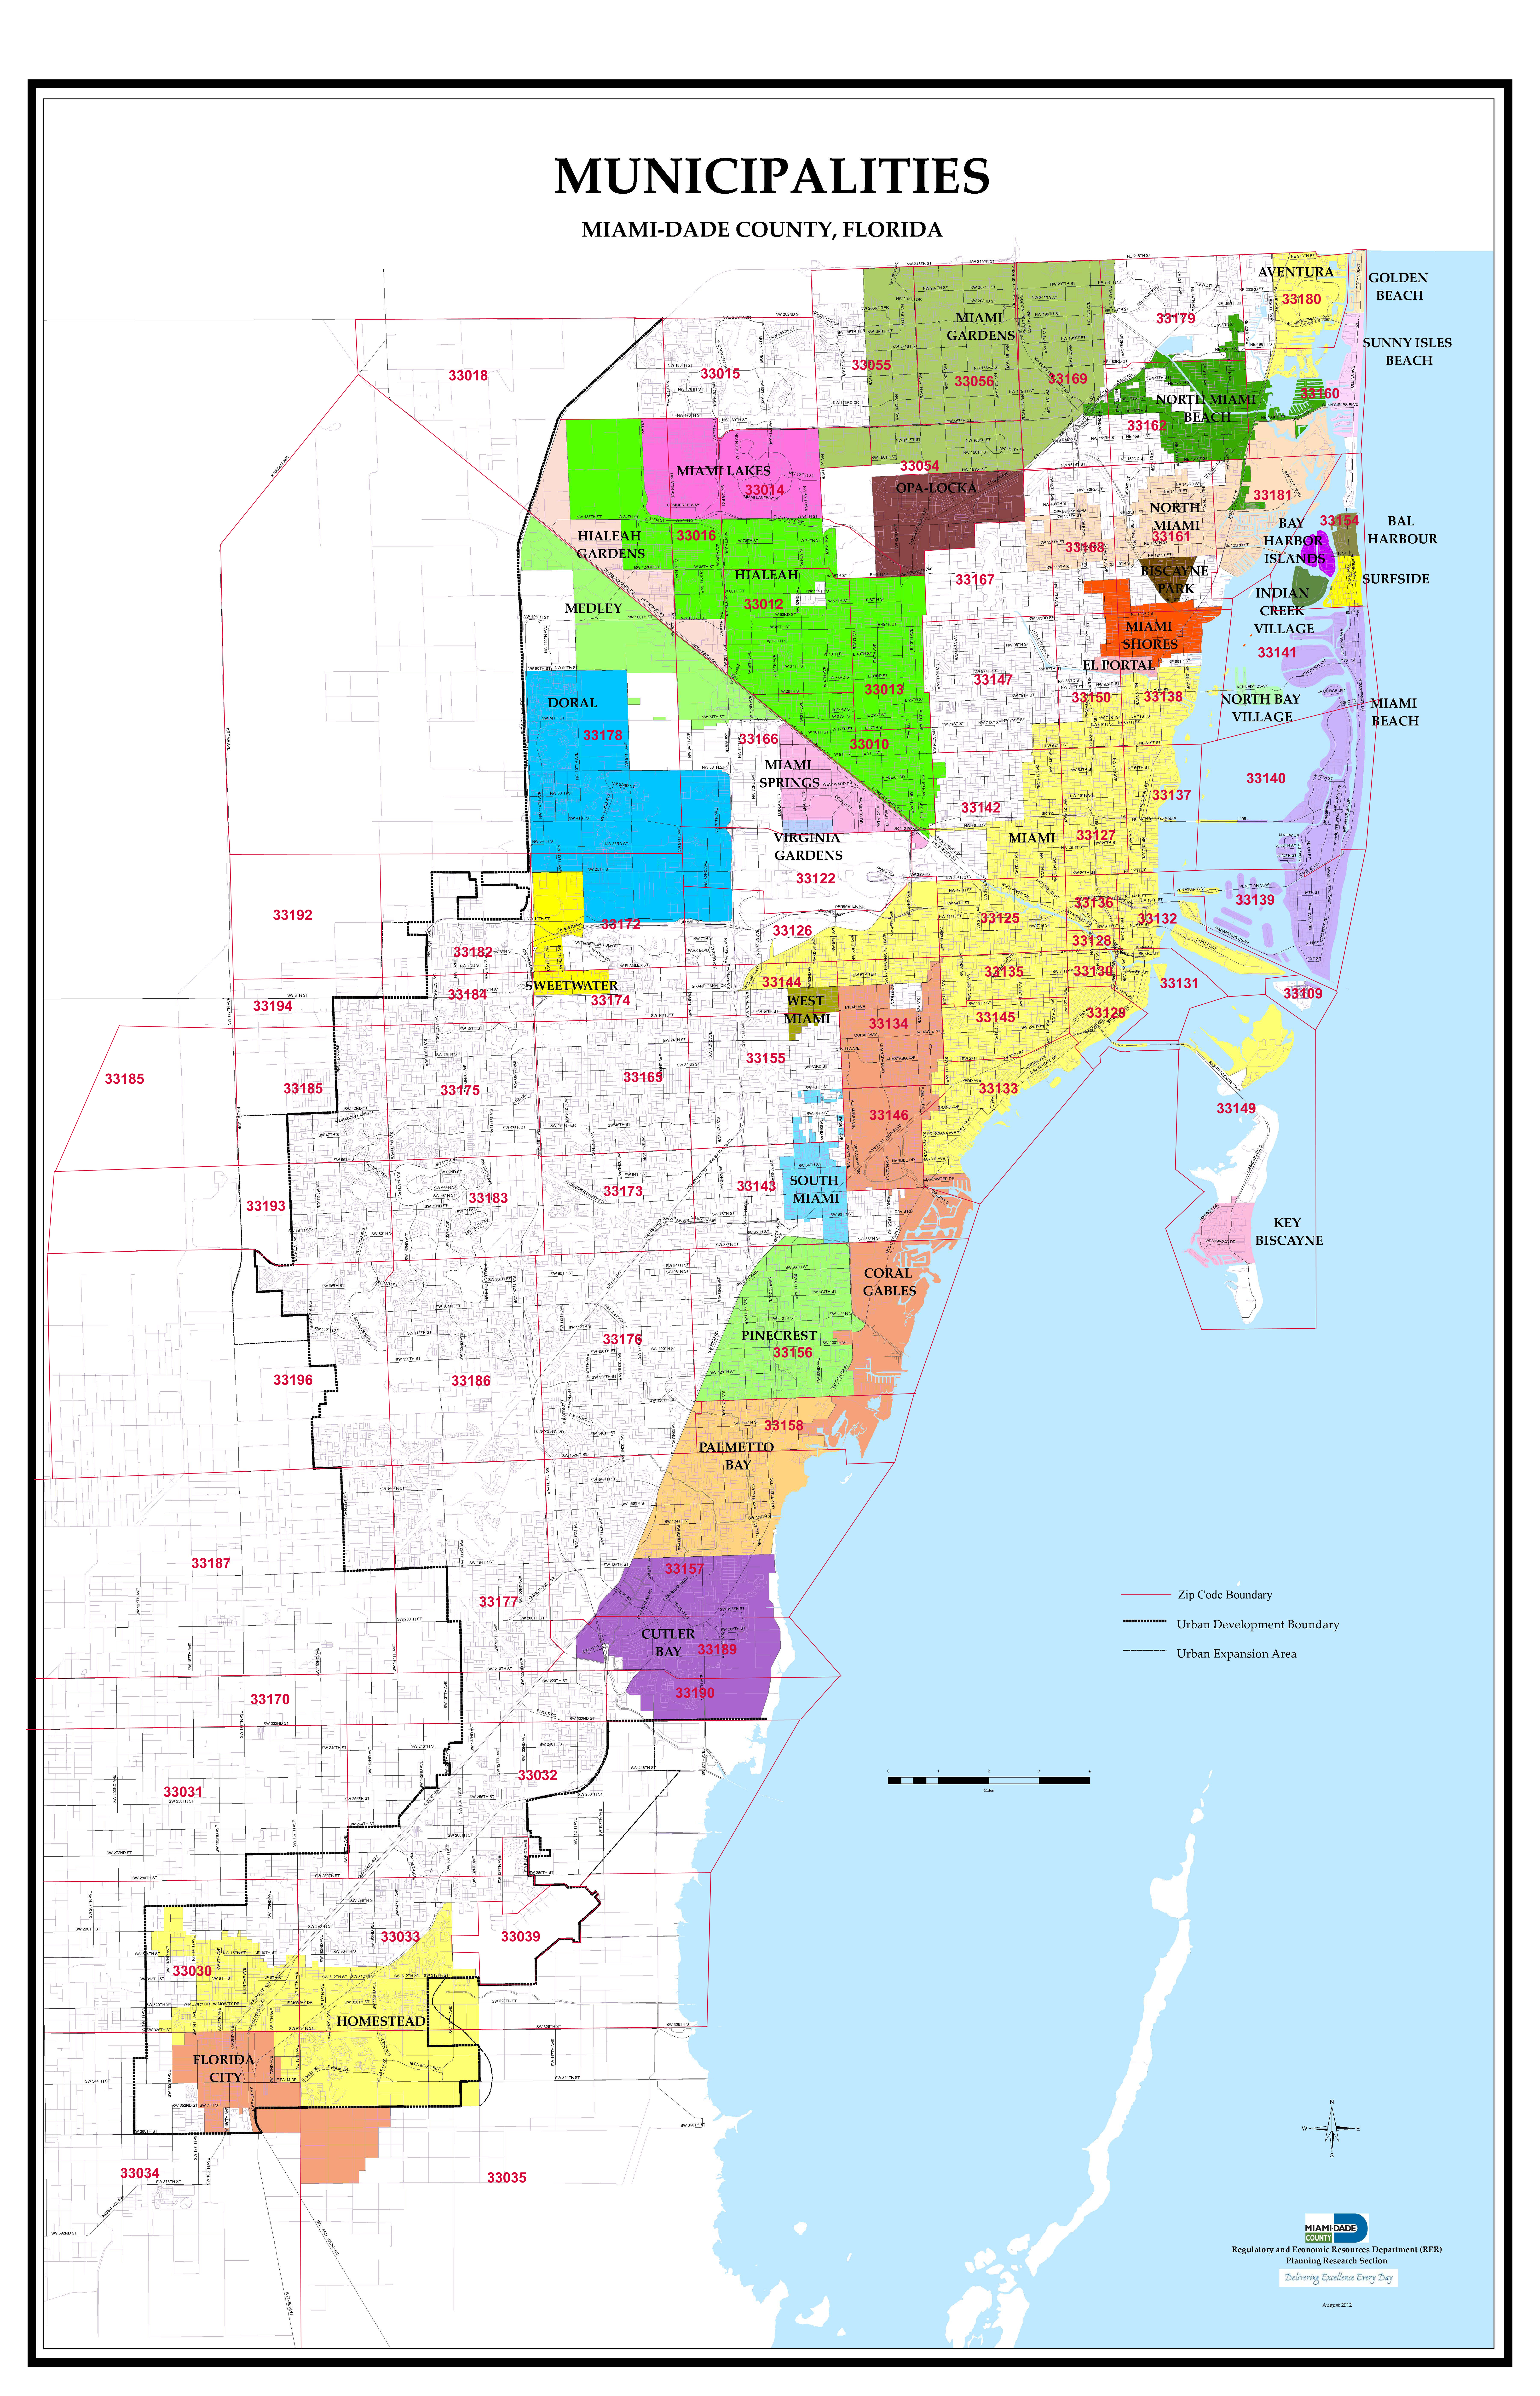 Miami-Dade Municipalities and Zip codes